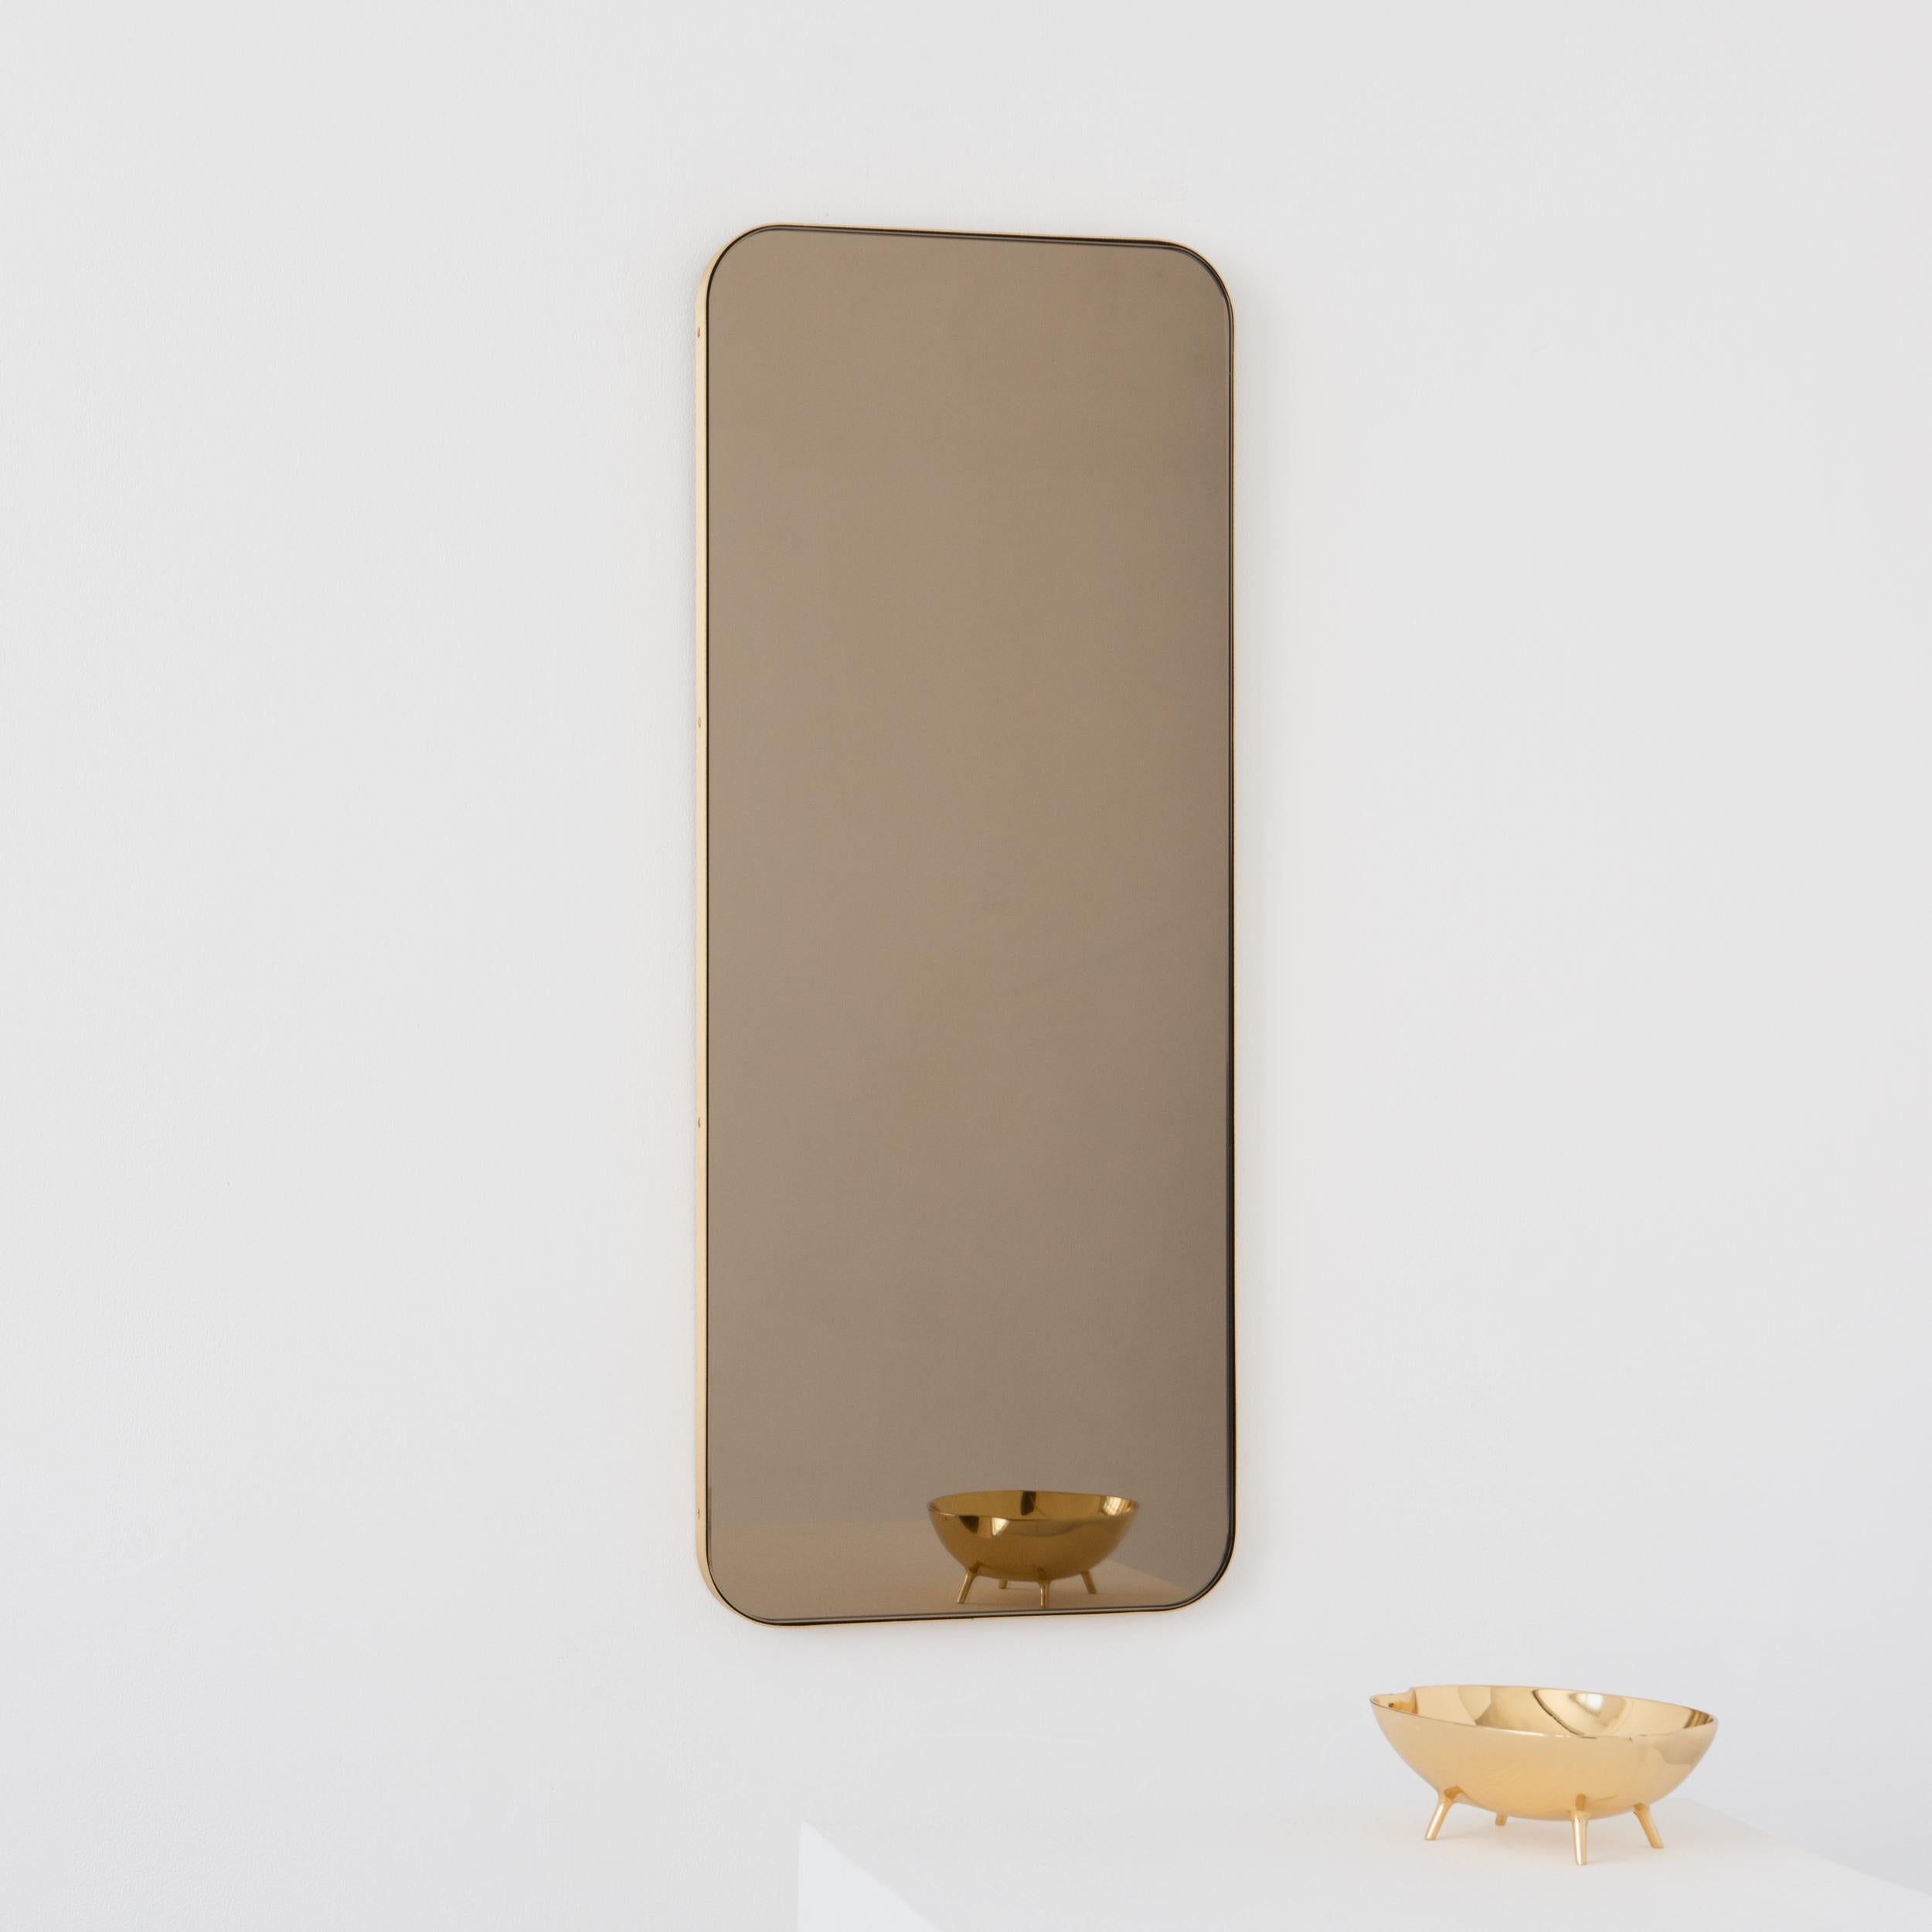 Miroir rectangulaire moderne teinté bronze avec un élégant cadre en laiton massif brossé. Une partie de la charmante collection Quadris, conçue et fabriquée à la main à Londres, au Royaume-Uni. 

Fourni avec une barre en z spécialisée pour une